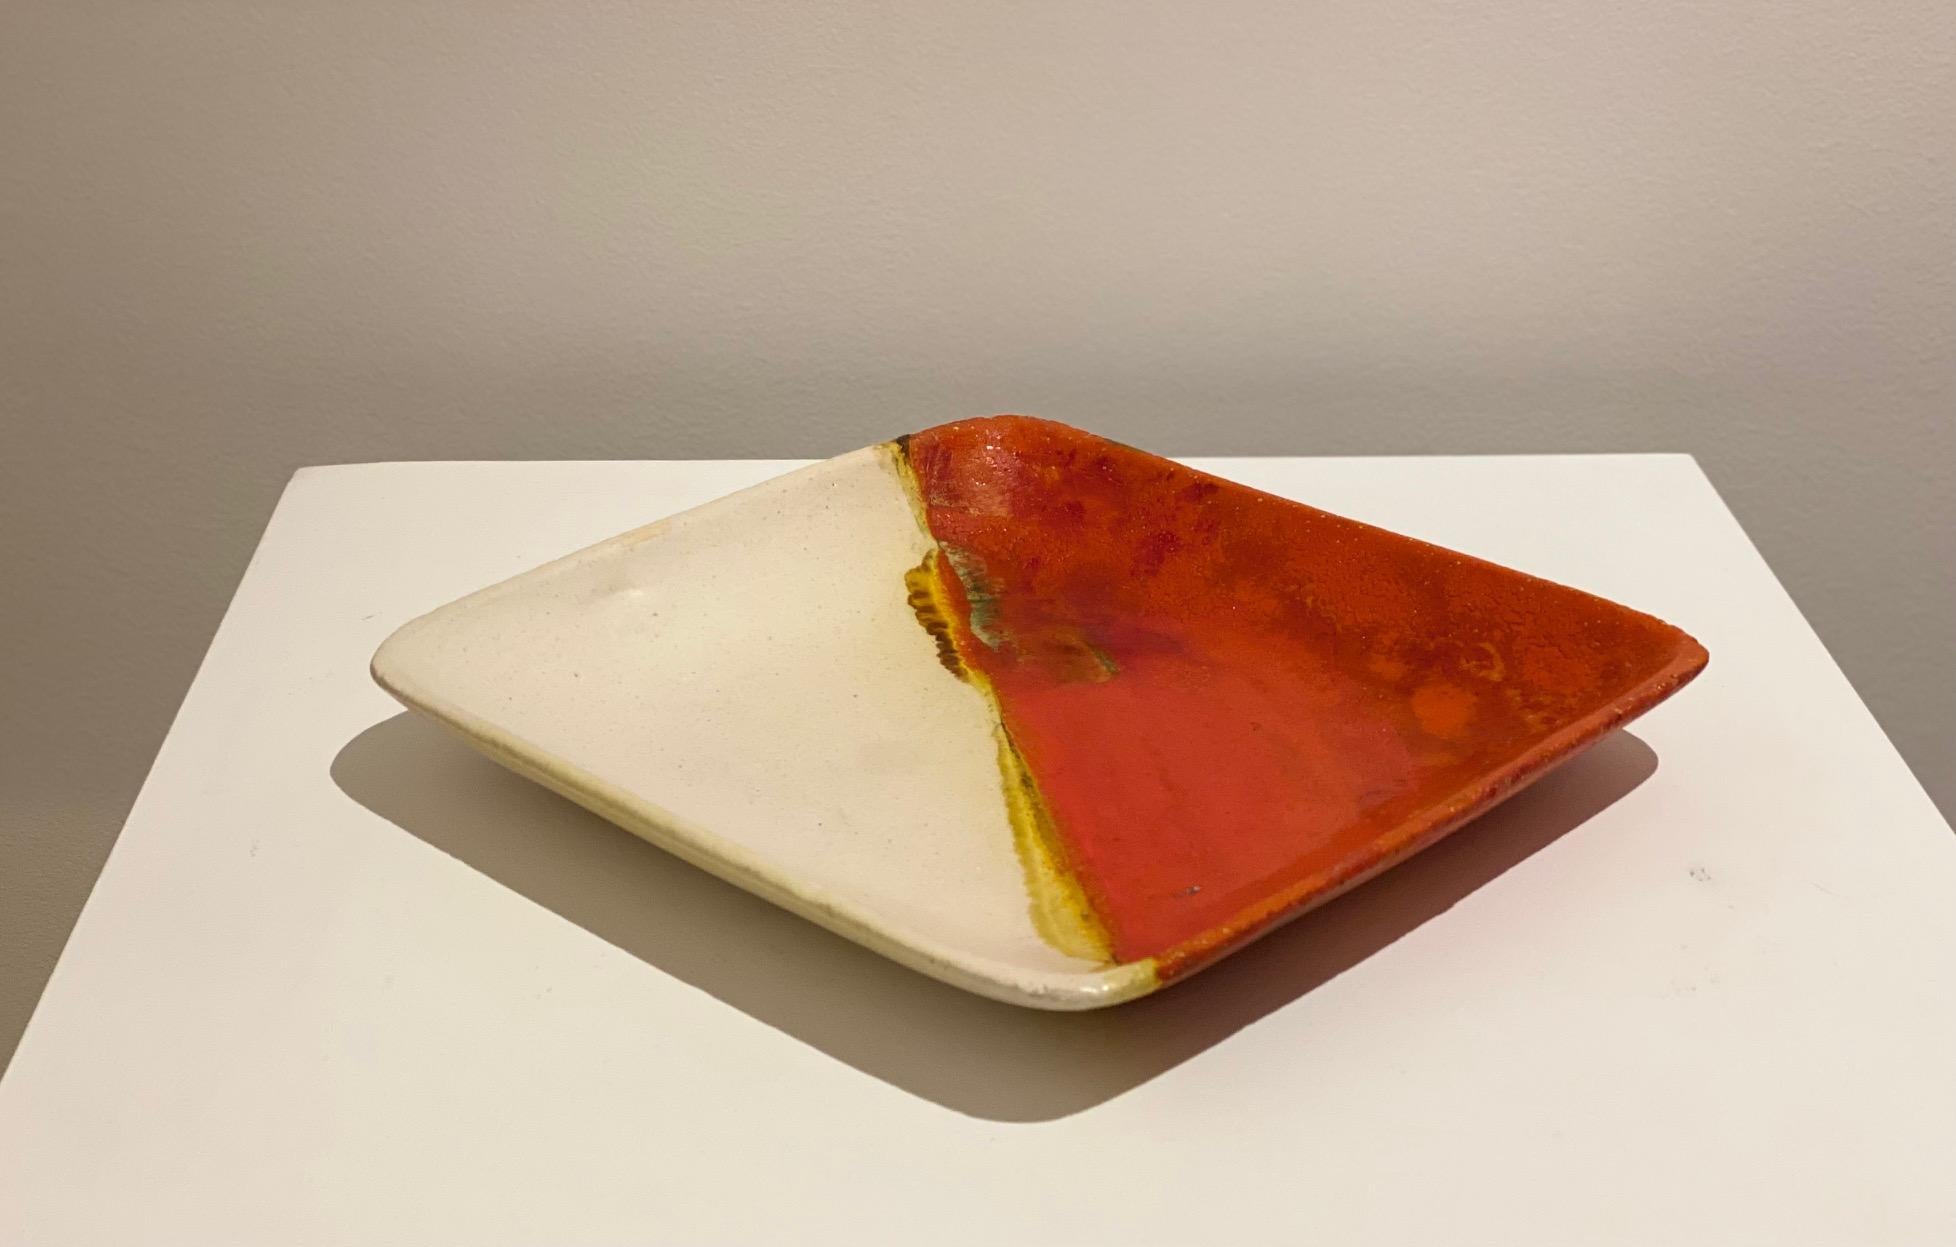 Signierte Keramik-Videopoche von Marcello Fantoni (1915-2011) für Raymor, Mitte der 1950er Jahre
Farben variierend zu weiß / orange und rot emailliert
Schöner Originalzustand.